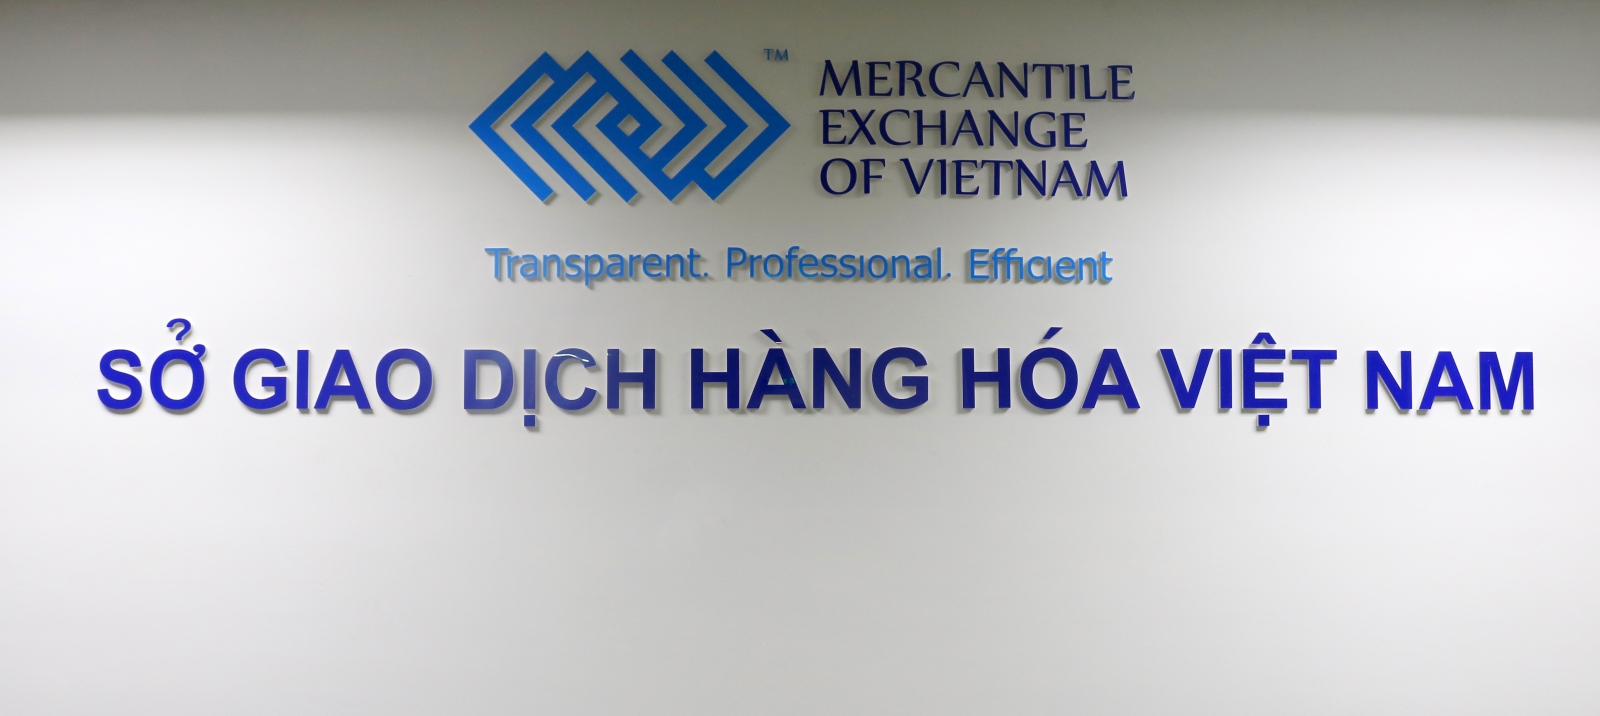 Công ty cổ phần giao dịch hàng hóa HBOT là Thành viên Kinh doanh mới của Sở Giao dịch Hàng hóa Việt Nam